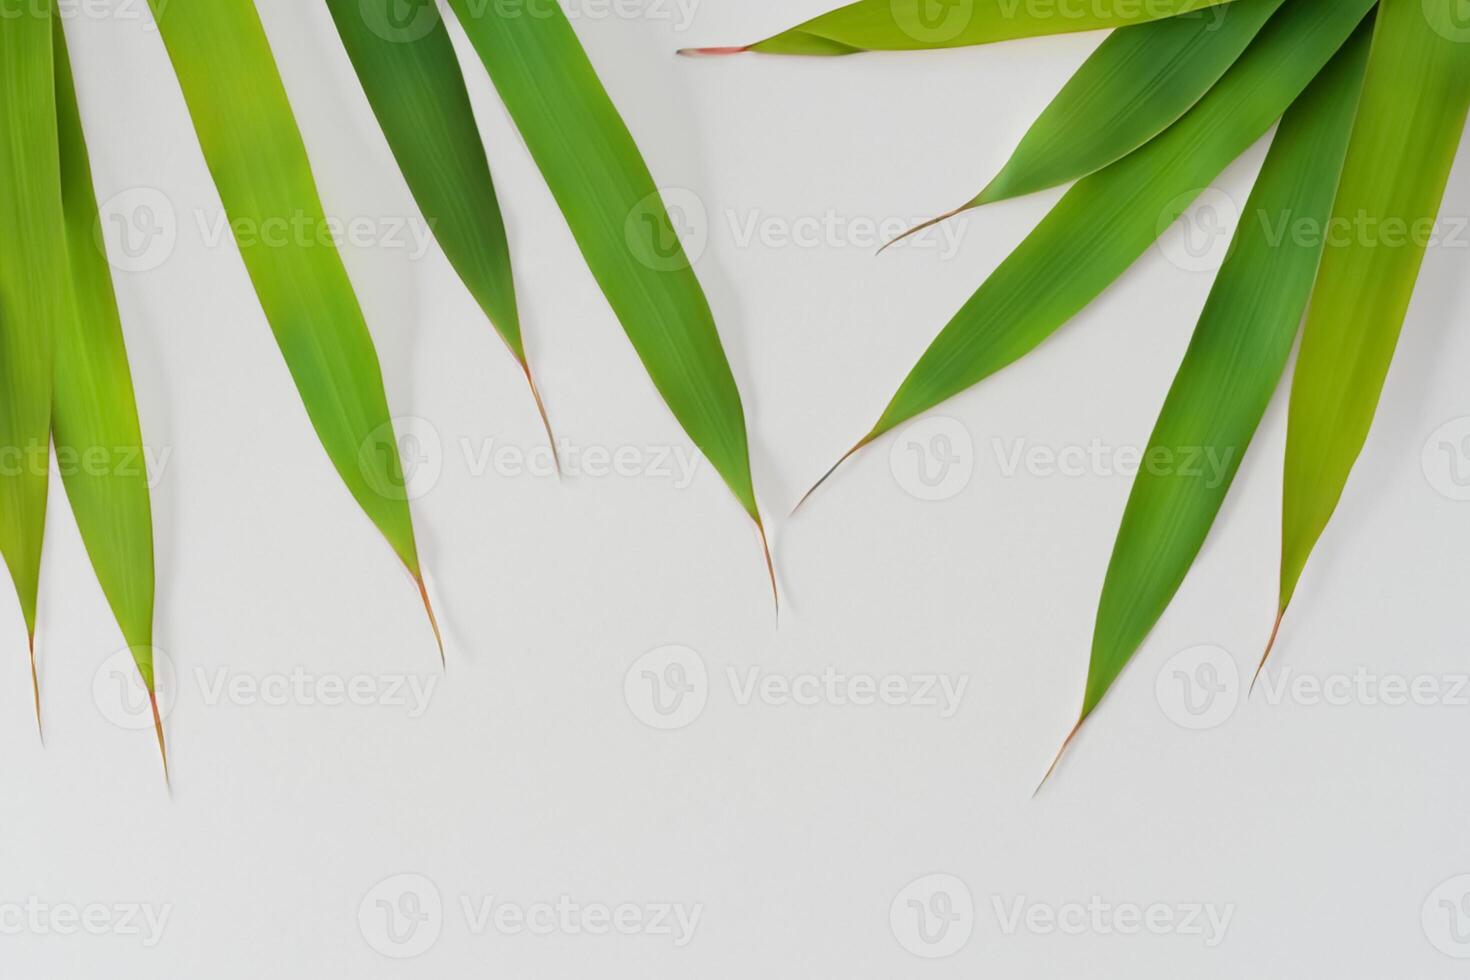 fattande de locka av skön bambu löv, var graciös grön blad dansa i harmonisk symfoni, skapande en lugn oas av naturens balans och tidlös skönhet foto